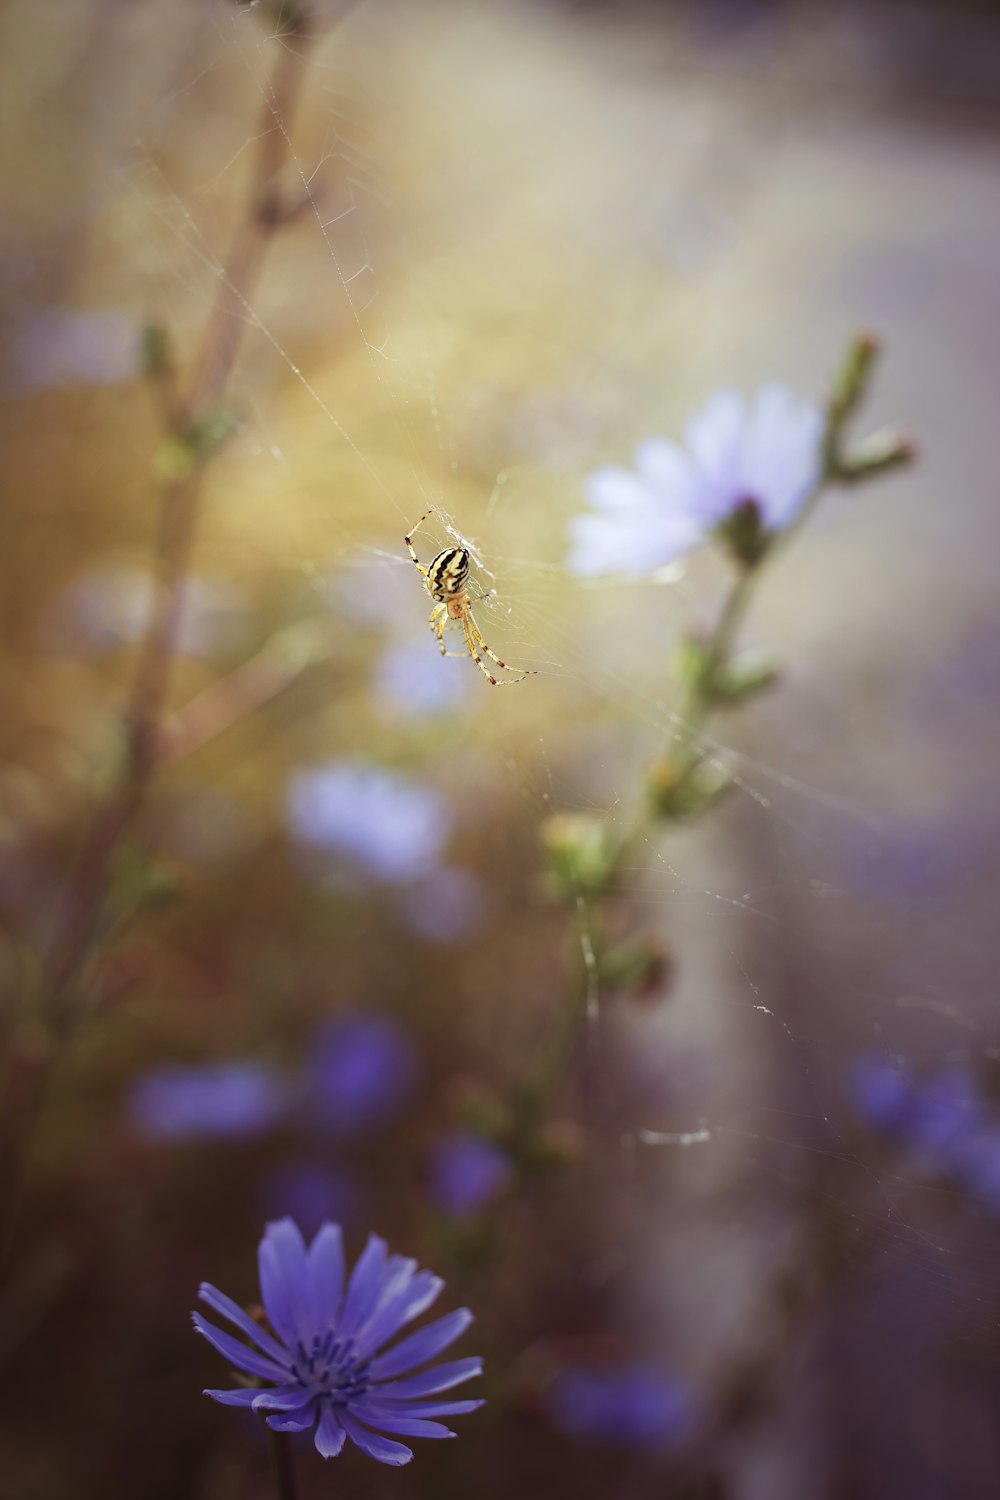 abeja posada en flor blanca en fotografía de primer plano durante el día